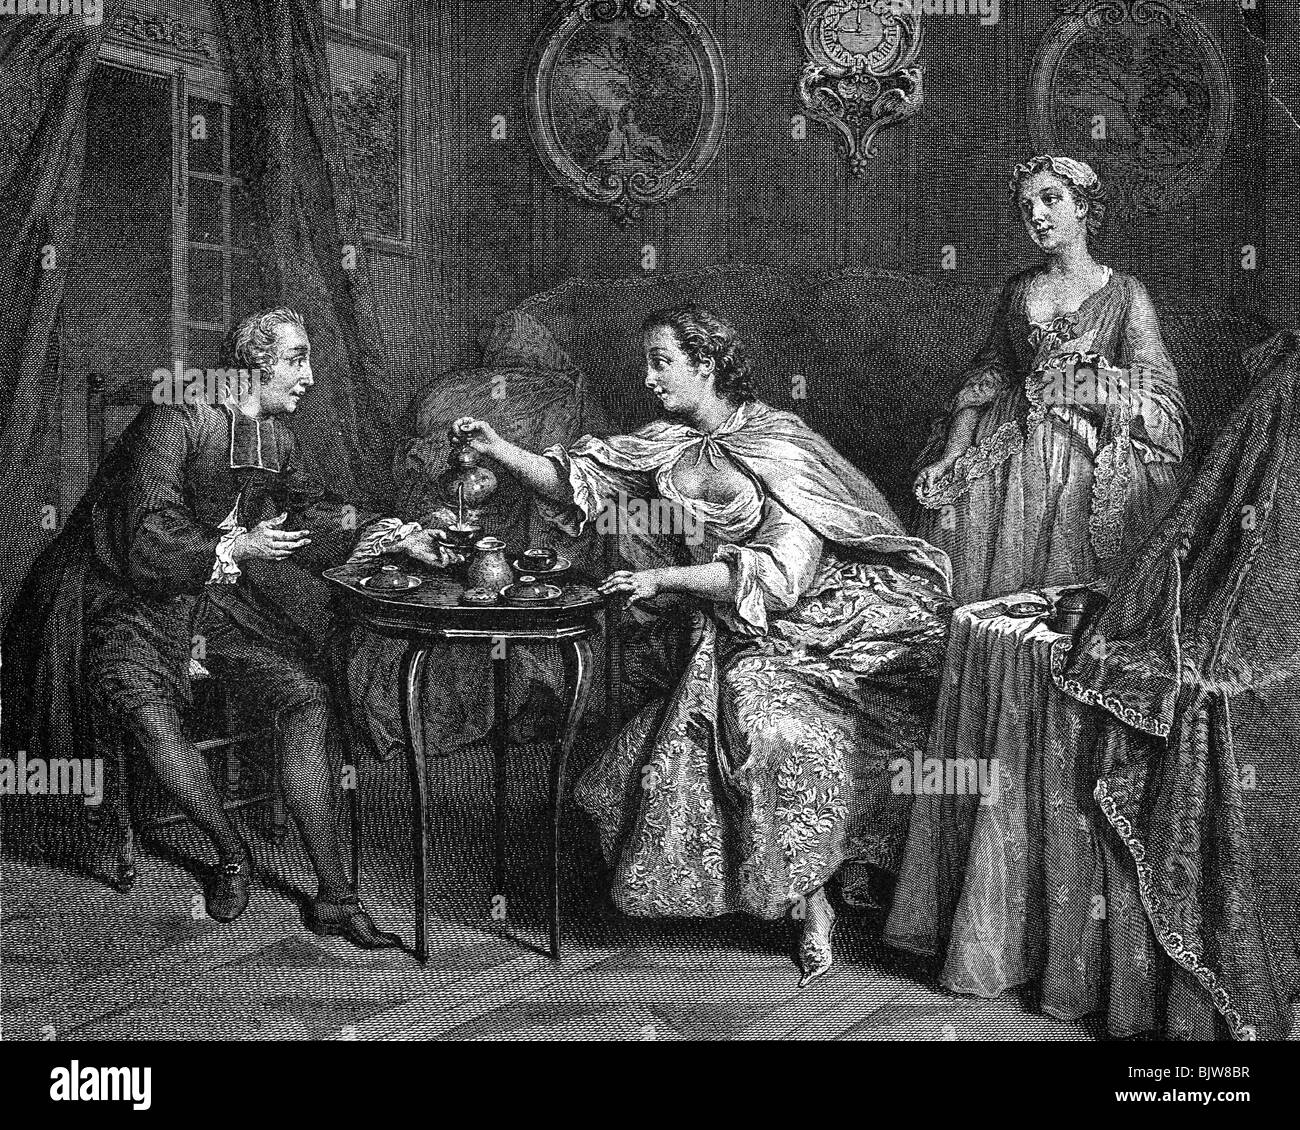 Lebensmittel, Kaffee, Kaffee am Morgen, zeitgenössischer Kupferstich aus 18. Jahrhundert, nach Gemälde von Nicolas Lancret "The Morning", Stockfoto